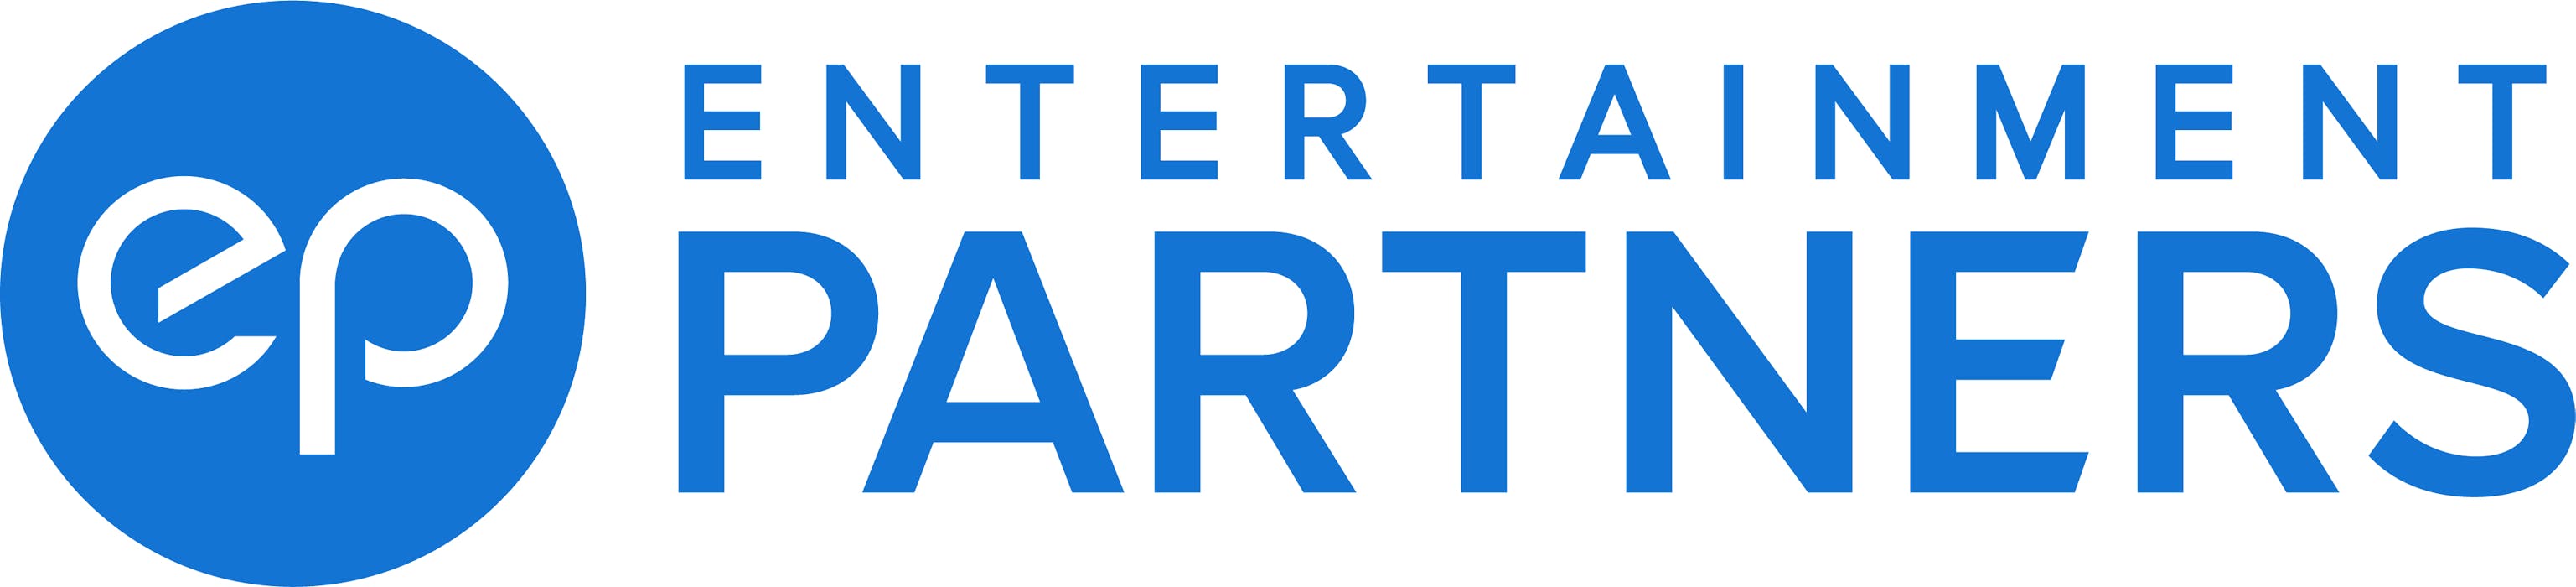 Entertainment Partners full logo